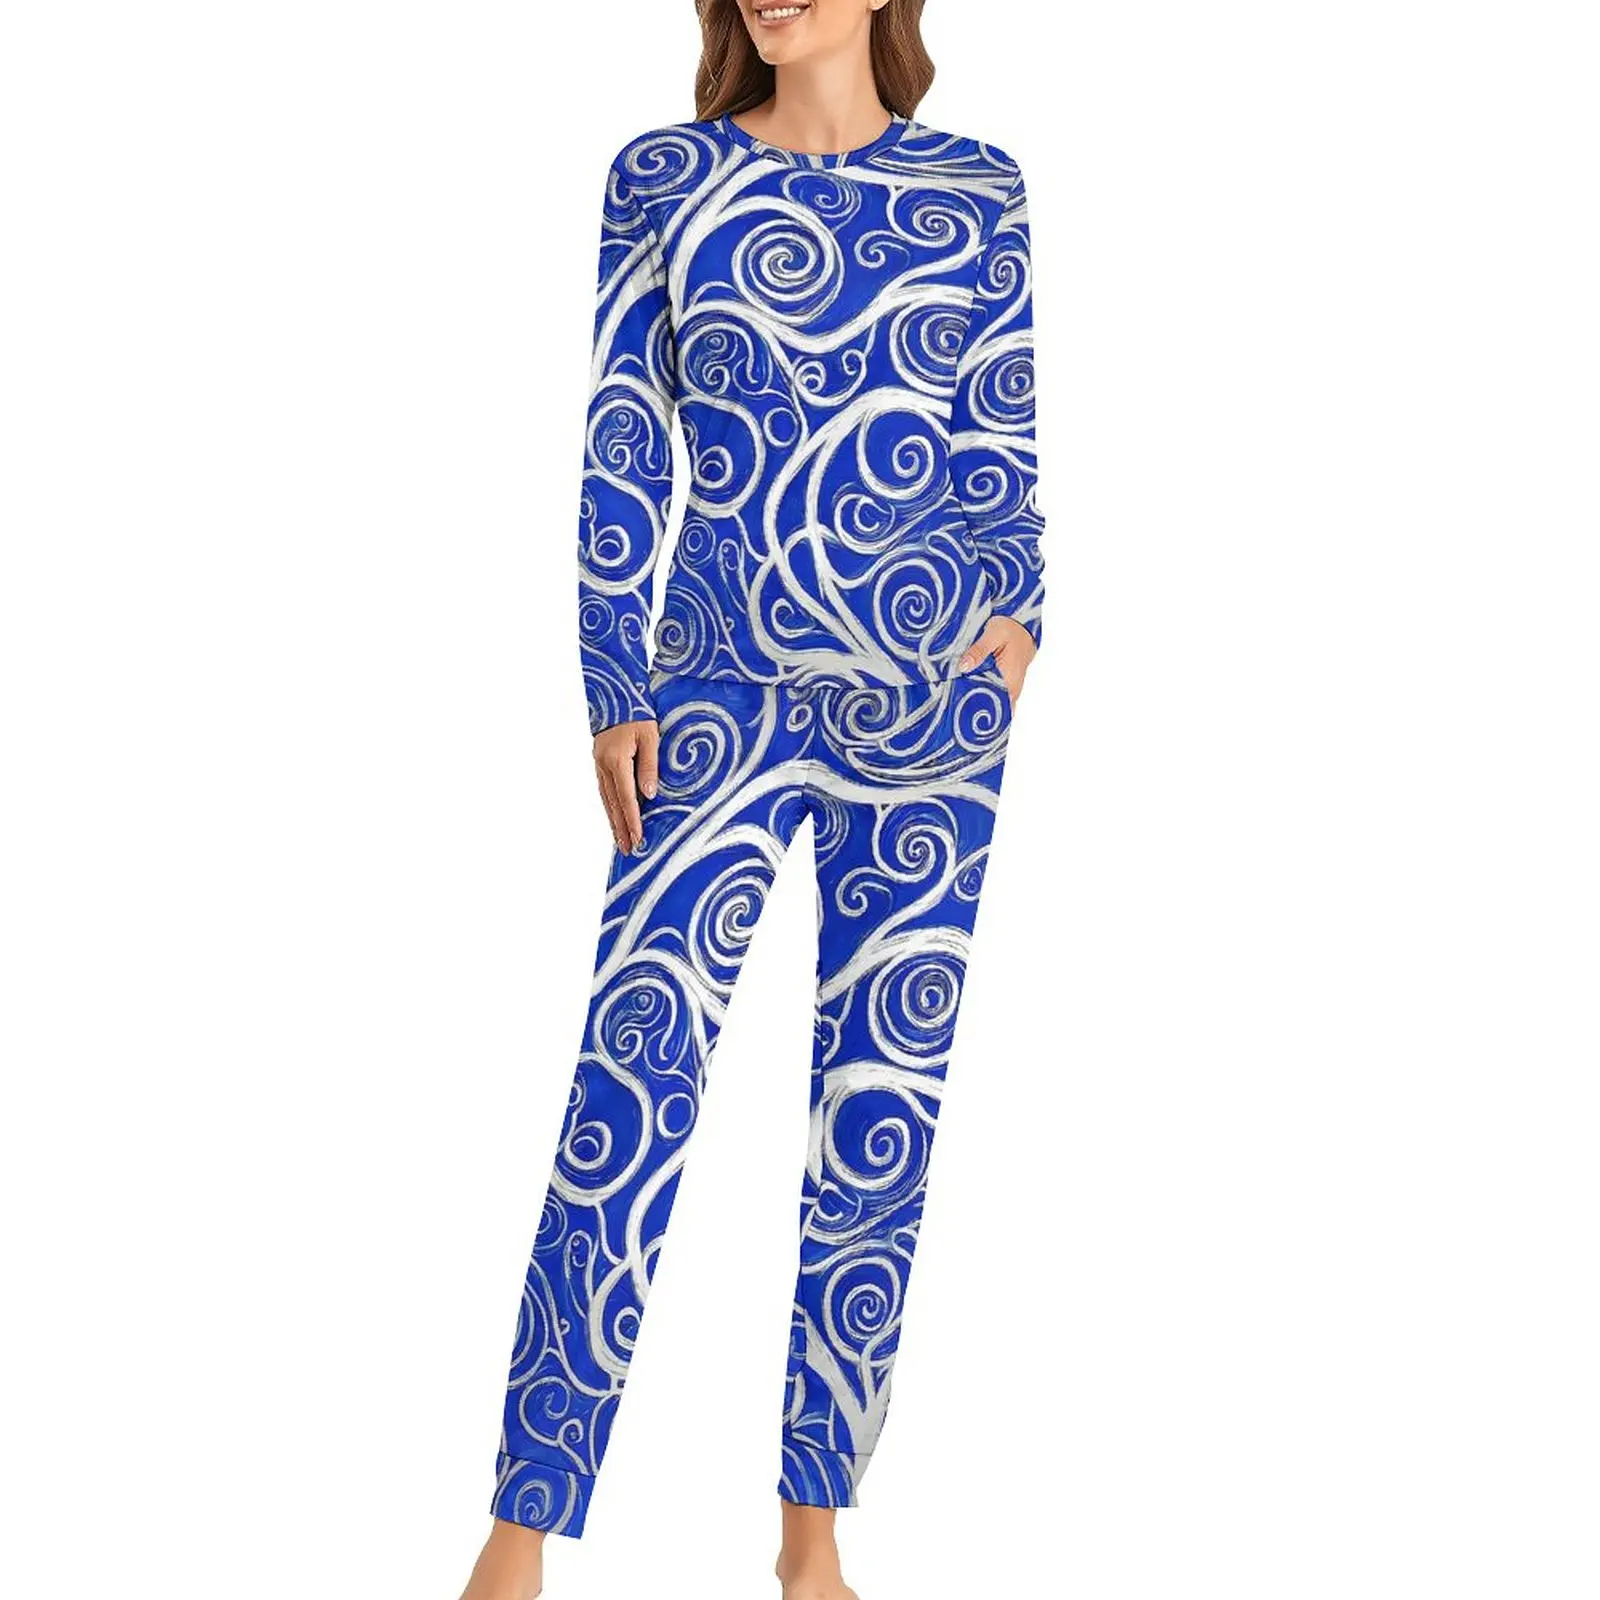 

Пижама с деревьями и ворсами, романтический пижамный комплект с абстрактным рисунком, Женская Повседневная Свободная Пижама большого размера с длинными рукавами